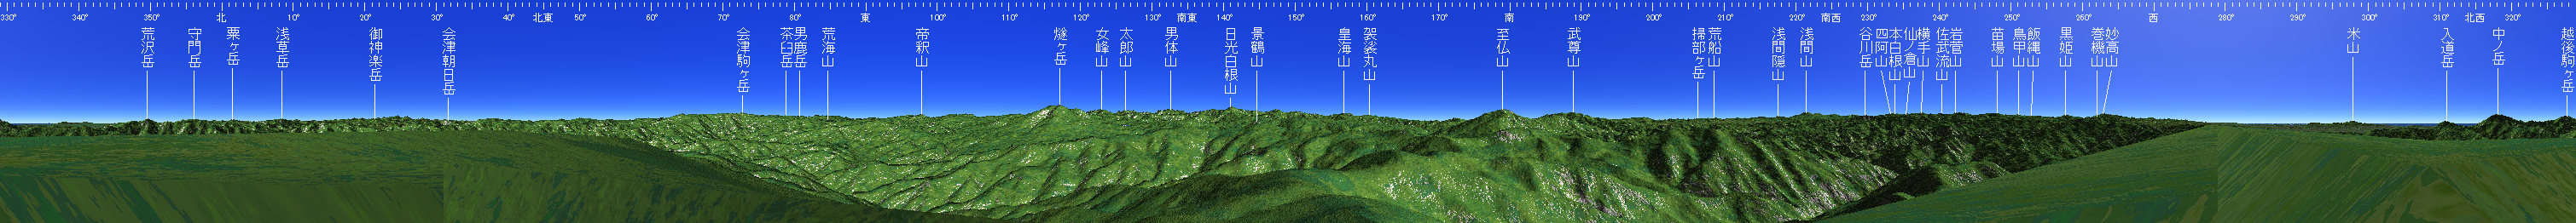 平ヶ岳 山頂展望図